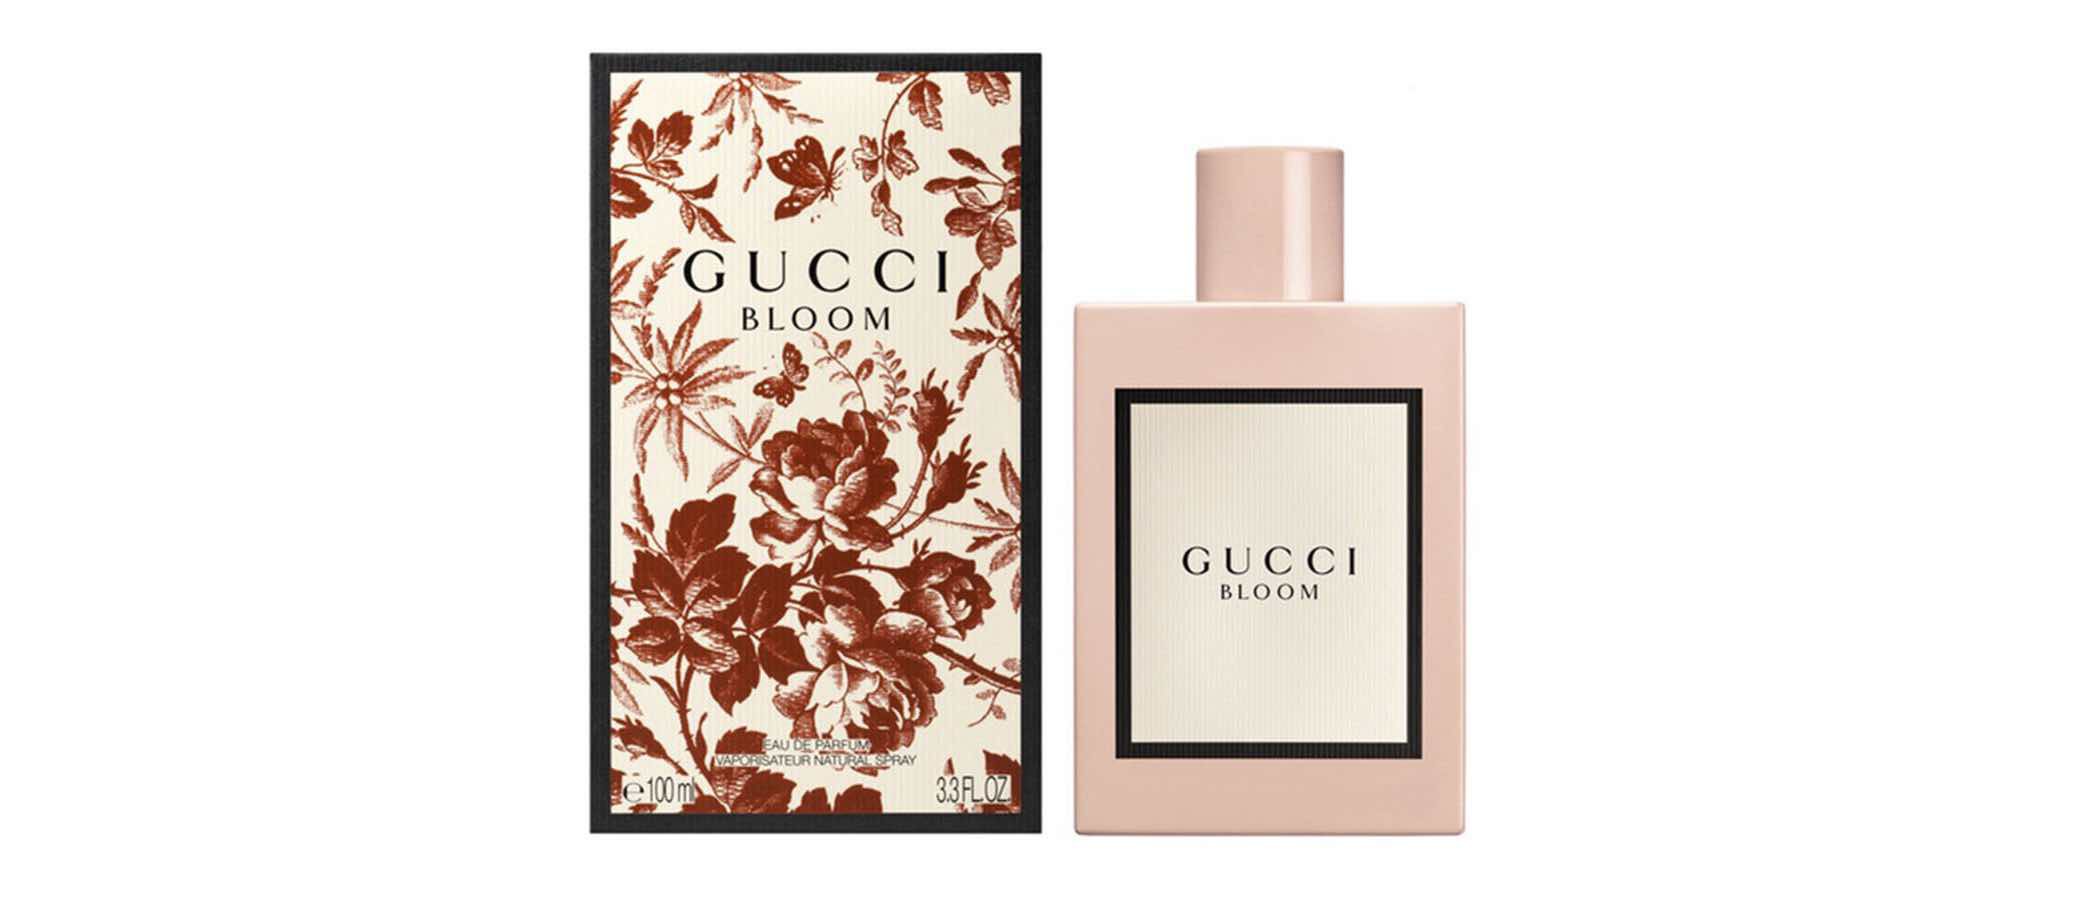 Gucci lanza 'Gucci Bloom', la nueva fragancia de la firma italiana para el verano